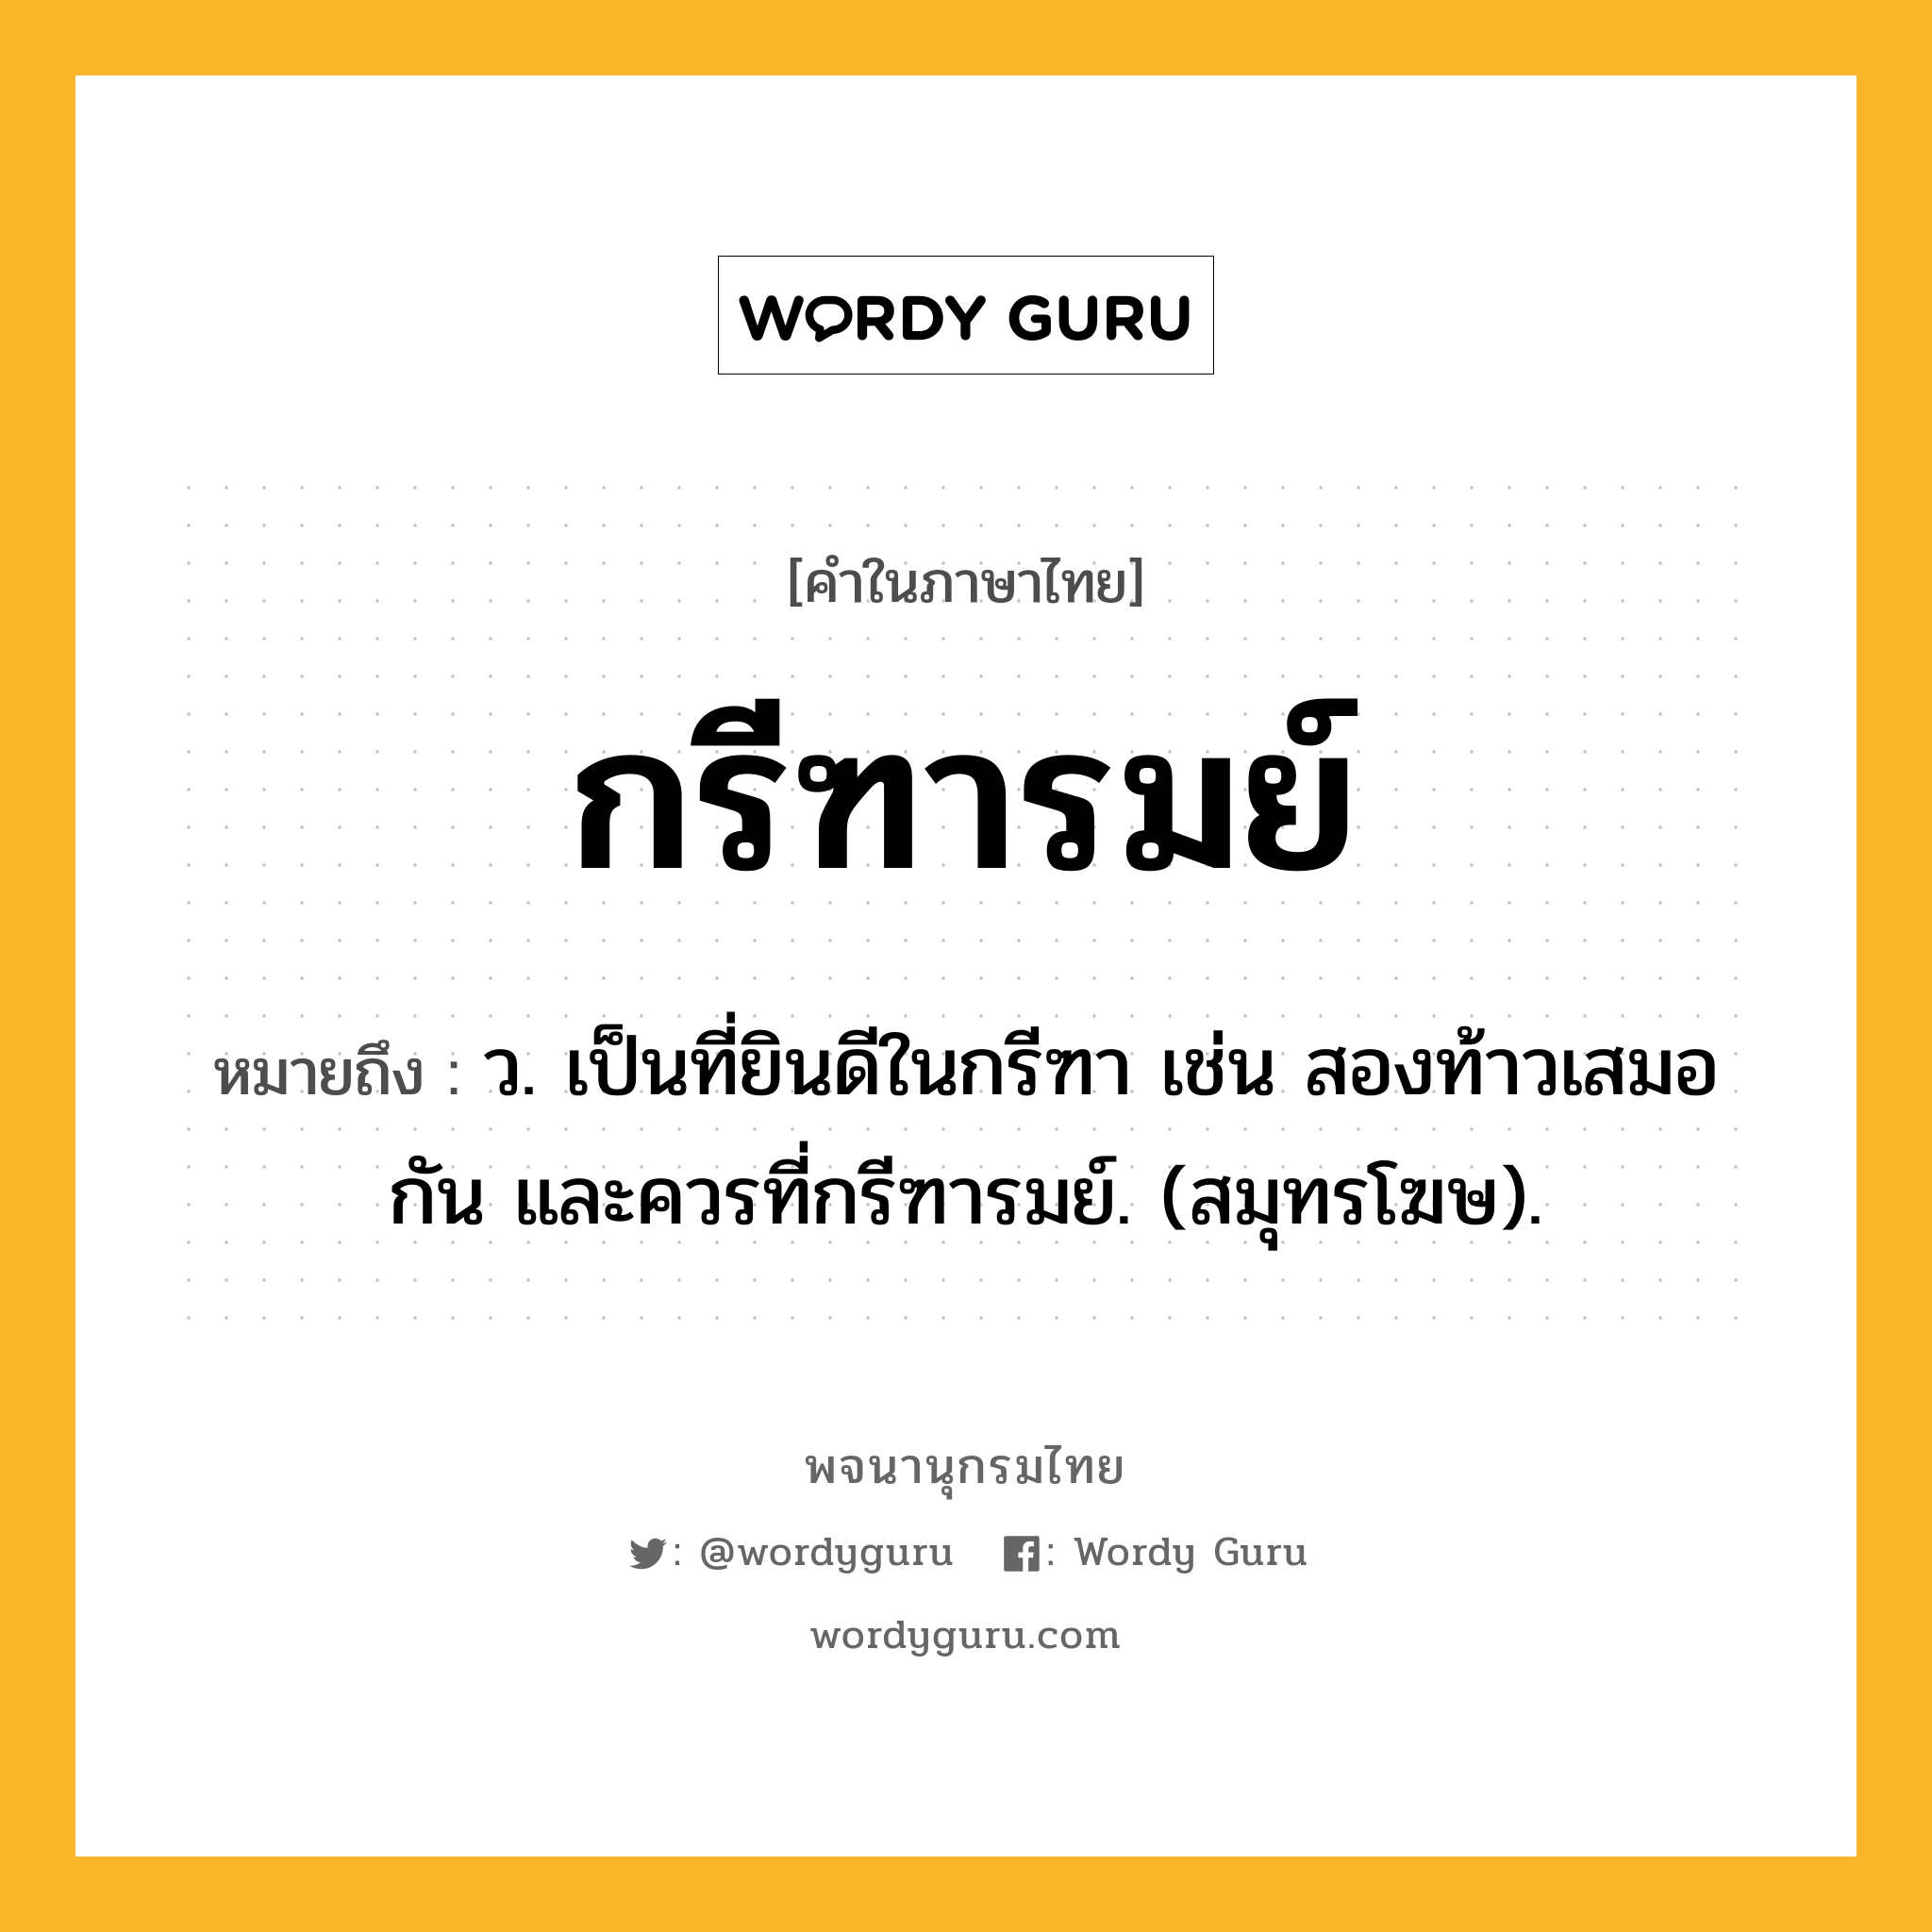 กรีฑารมย์ หมายถึงอะไร?, คำในภาษาไทย กรีฑารมย์ หมายถึง ว. เป็นที่ยินดีในกรีฑา เช่น สองท้าวเสมอกัน และควรที่กรีฑารมย์. (สมุทรโฆษ).